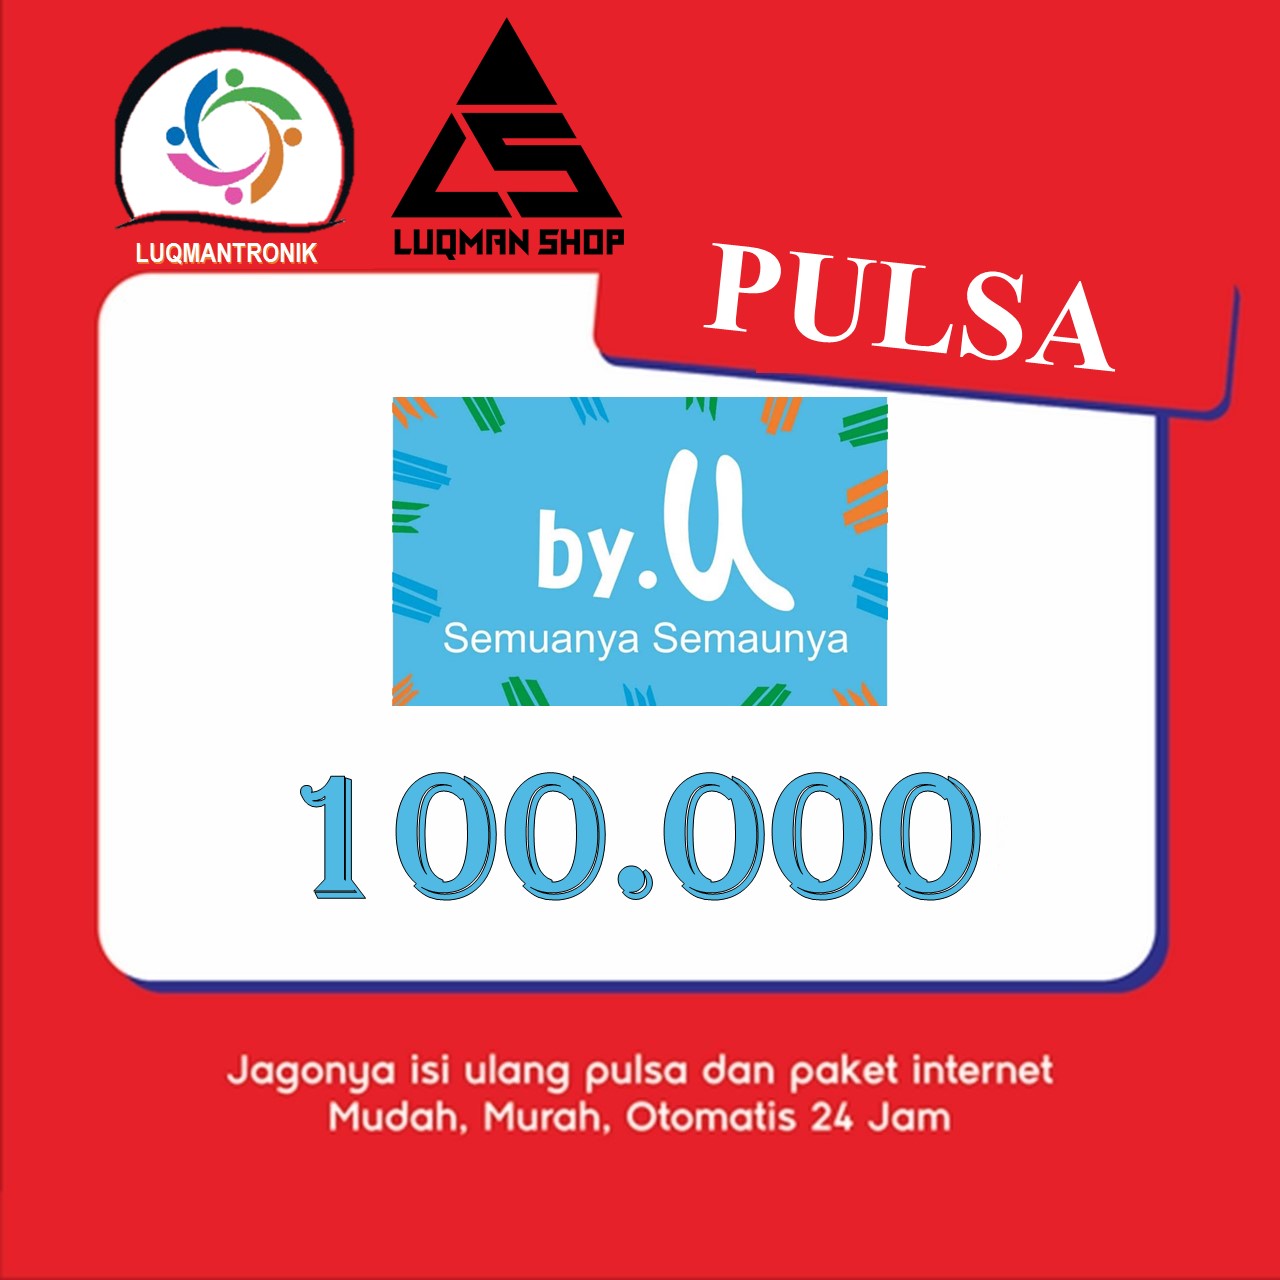 Pulsa by.U - pulsa by.U Rp 100.000